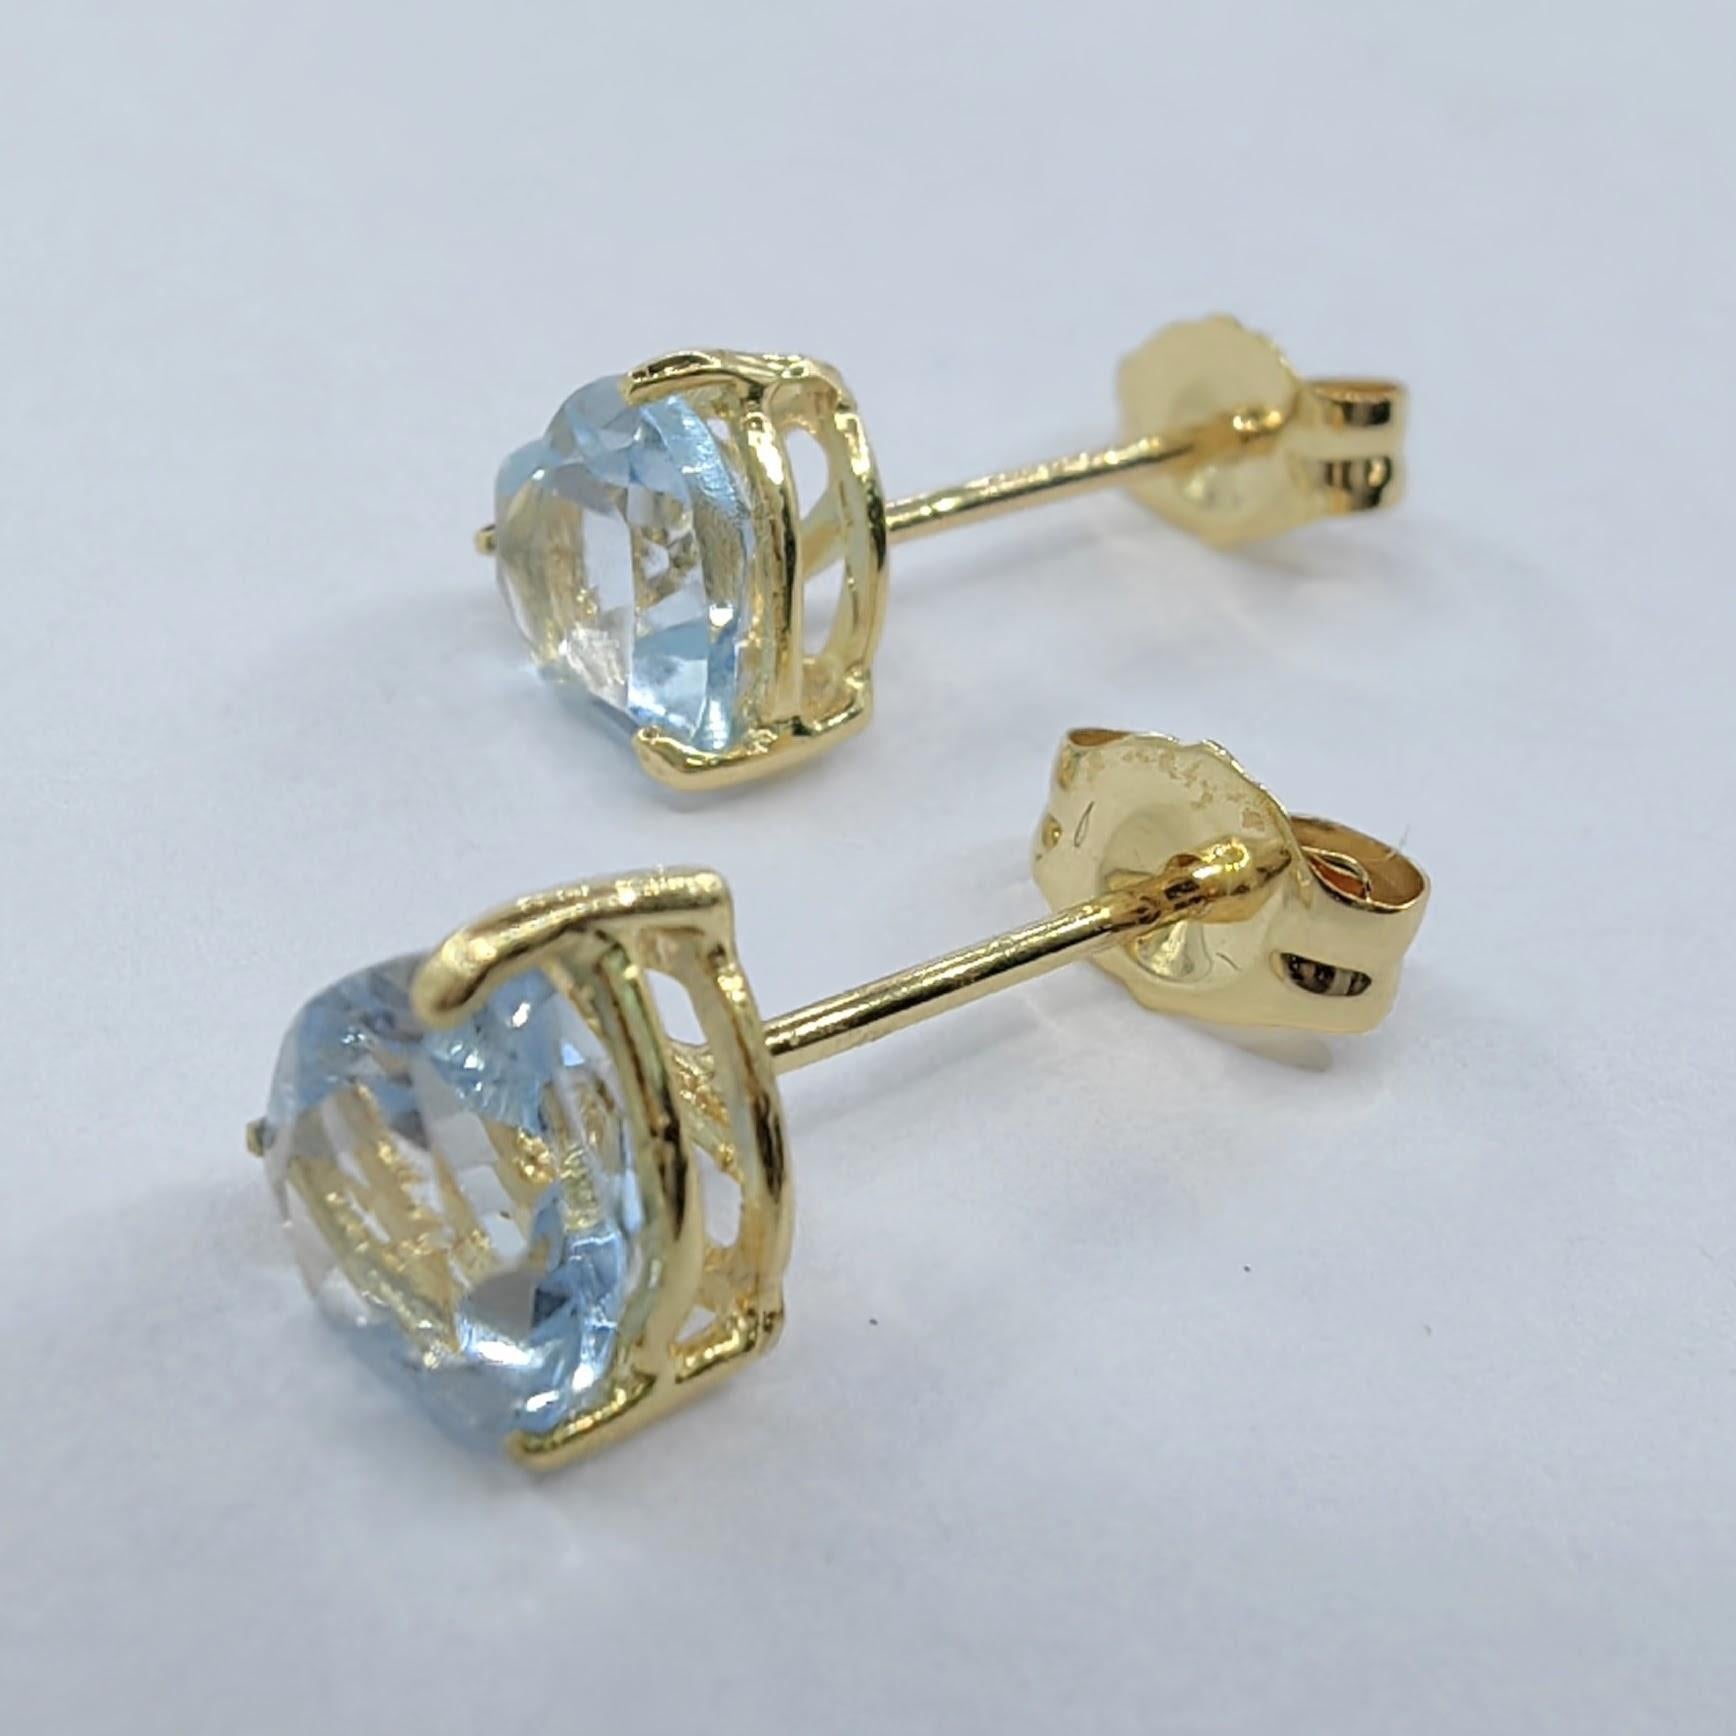 Voici nos Vintage 1980's Heart-cut Blue Topaz Stud Earrings en or jaune 14K, une paire captivante qui respire l'élégance intemporelle. Ces boucles d'oreilles exquises sont ornées de deux topazes bleues taillées en cœur, mesurant chacune environ 5,45